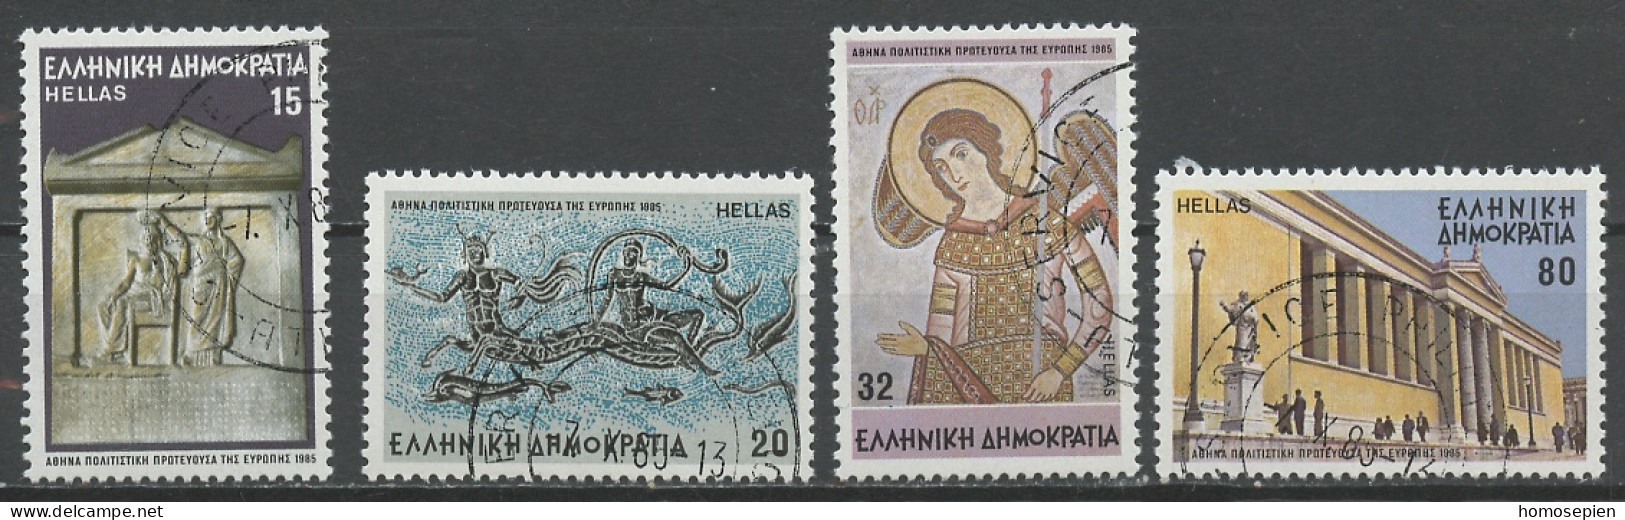 Grèce - Griechenland - Greece 1985 Y&T N°1576 à 1579 - Michel N°1594 à 1597 (o) - Athènes Capitale Culturelle - Used Stamps